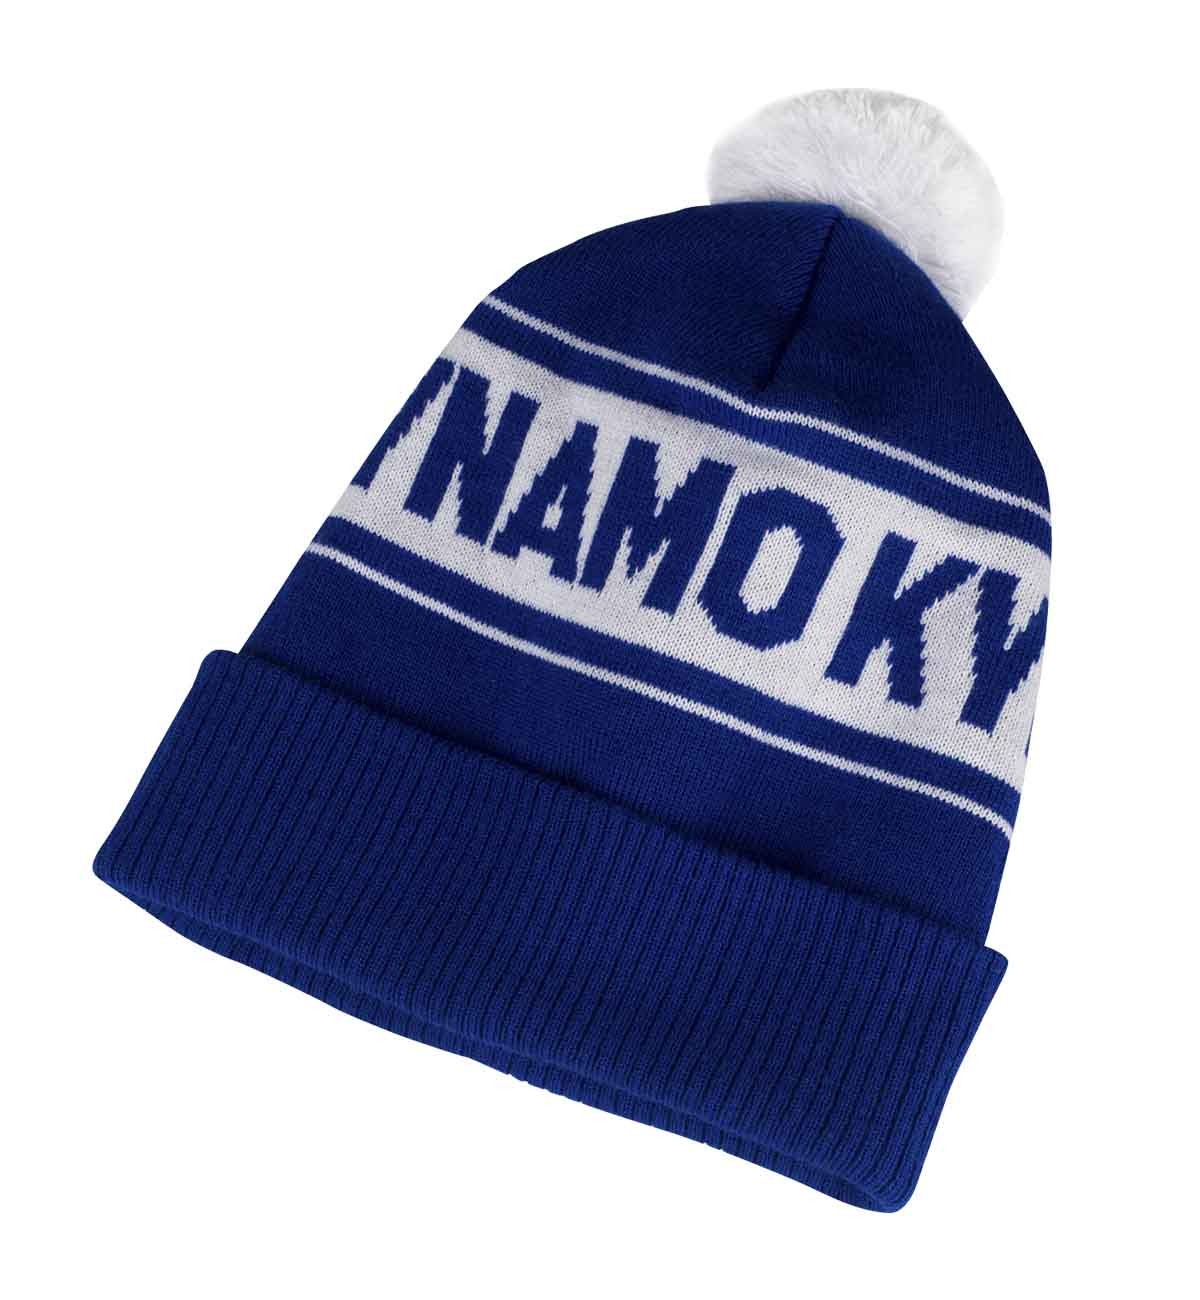 Hat "DYNAMO KYIV", blue/white